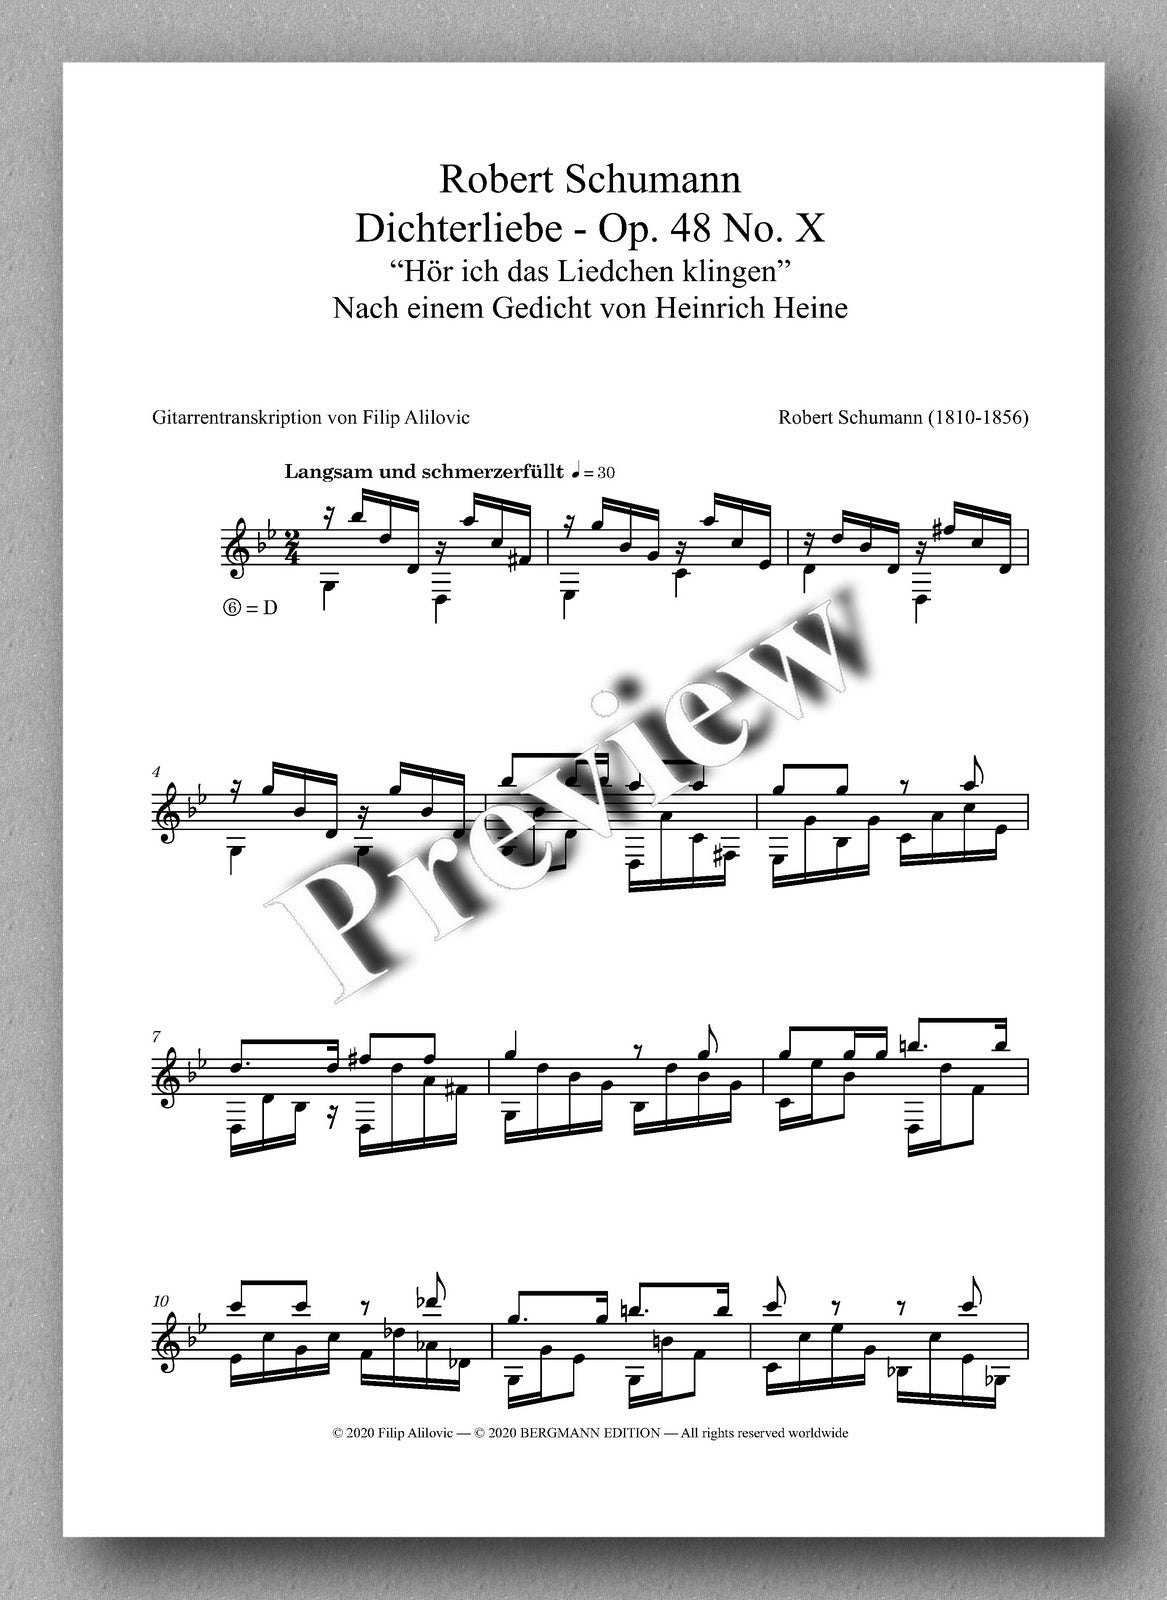 Robert Schumann, Dichterliebe - Op. 48 No. X, “Hör ich das Liedchen klingen” - preview of the Music score